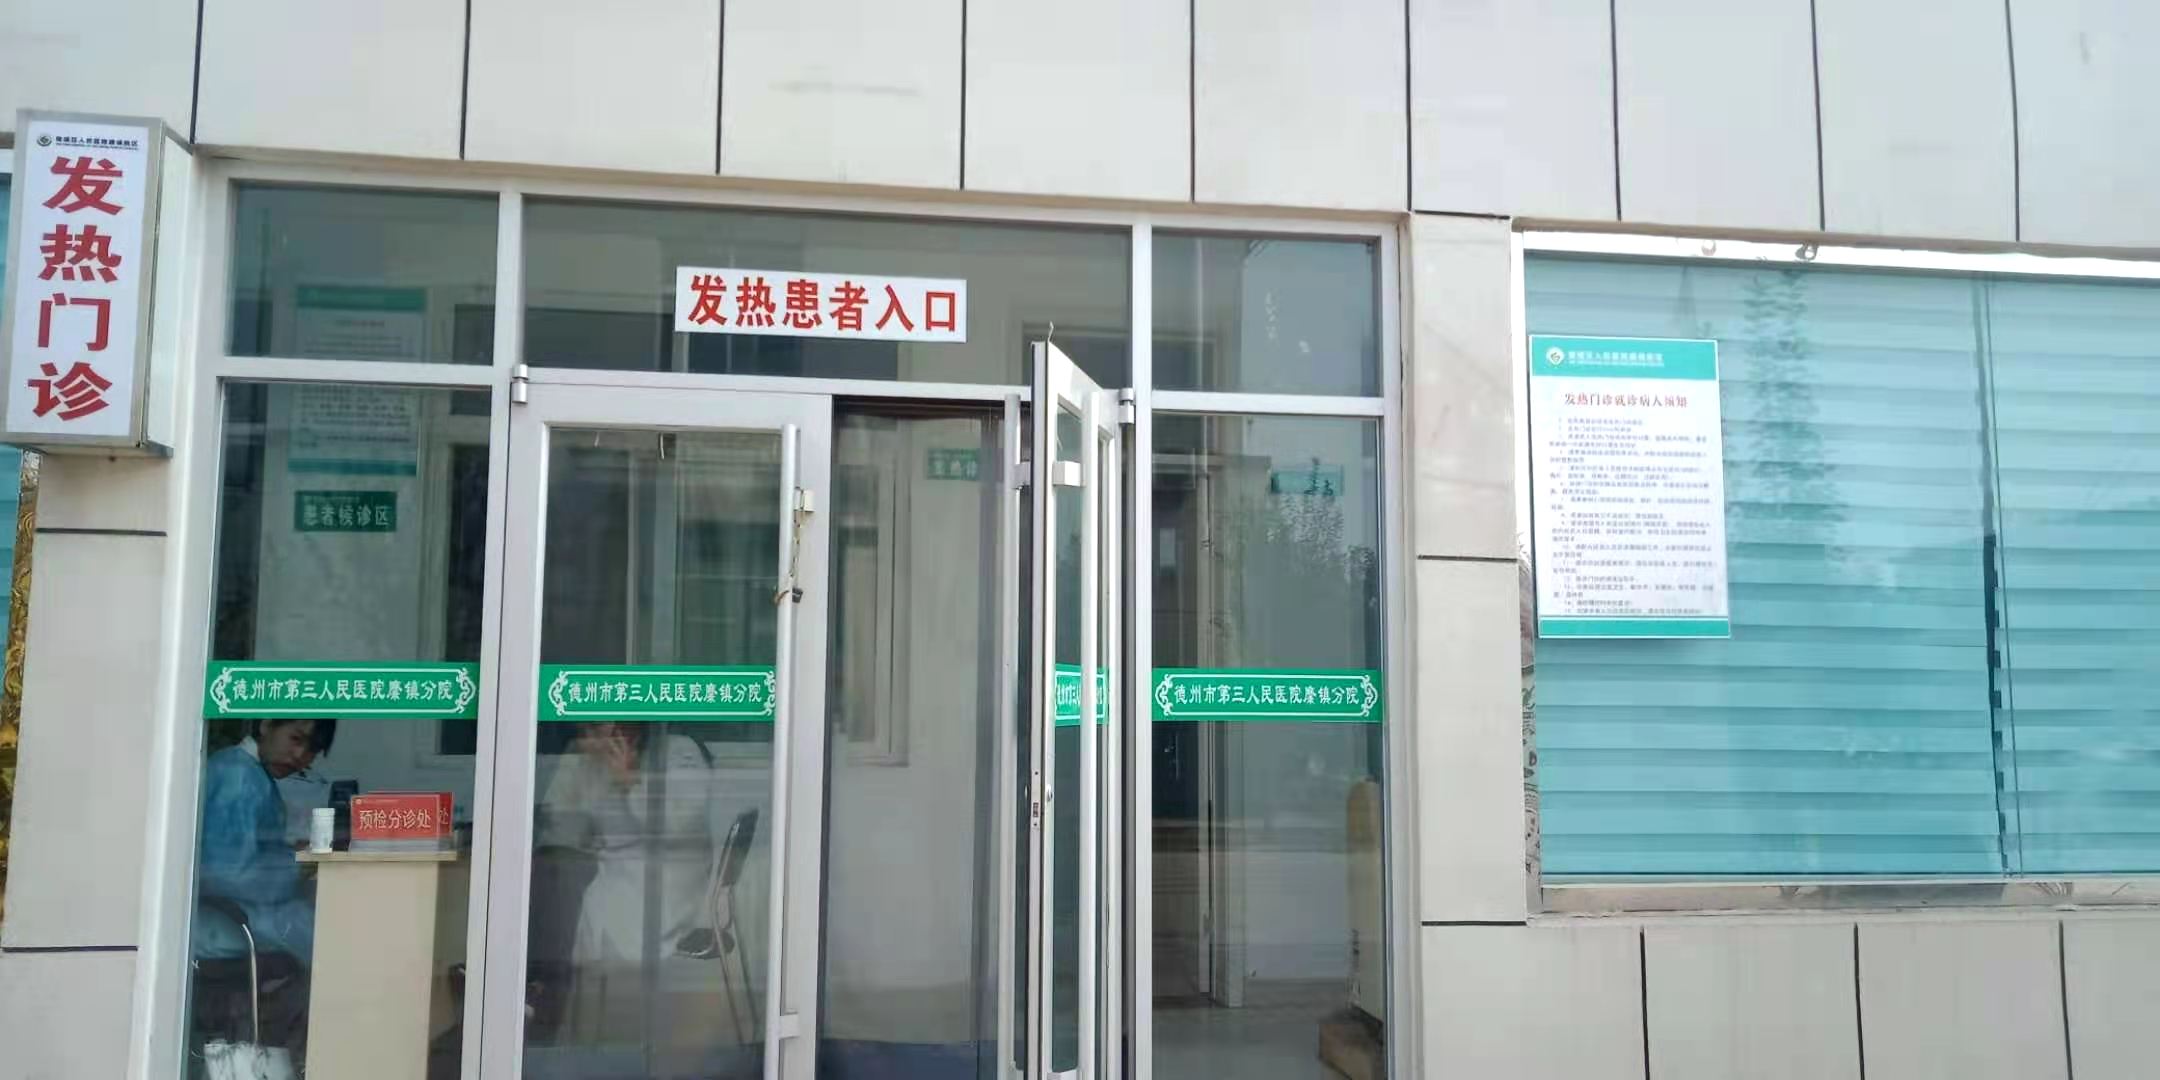 集团之声 | 徐州市铜山区焦山社区卫生服务中心简介 - 徐州市第一人民医院